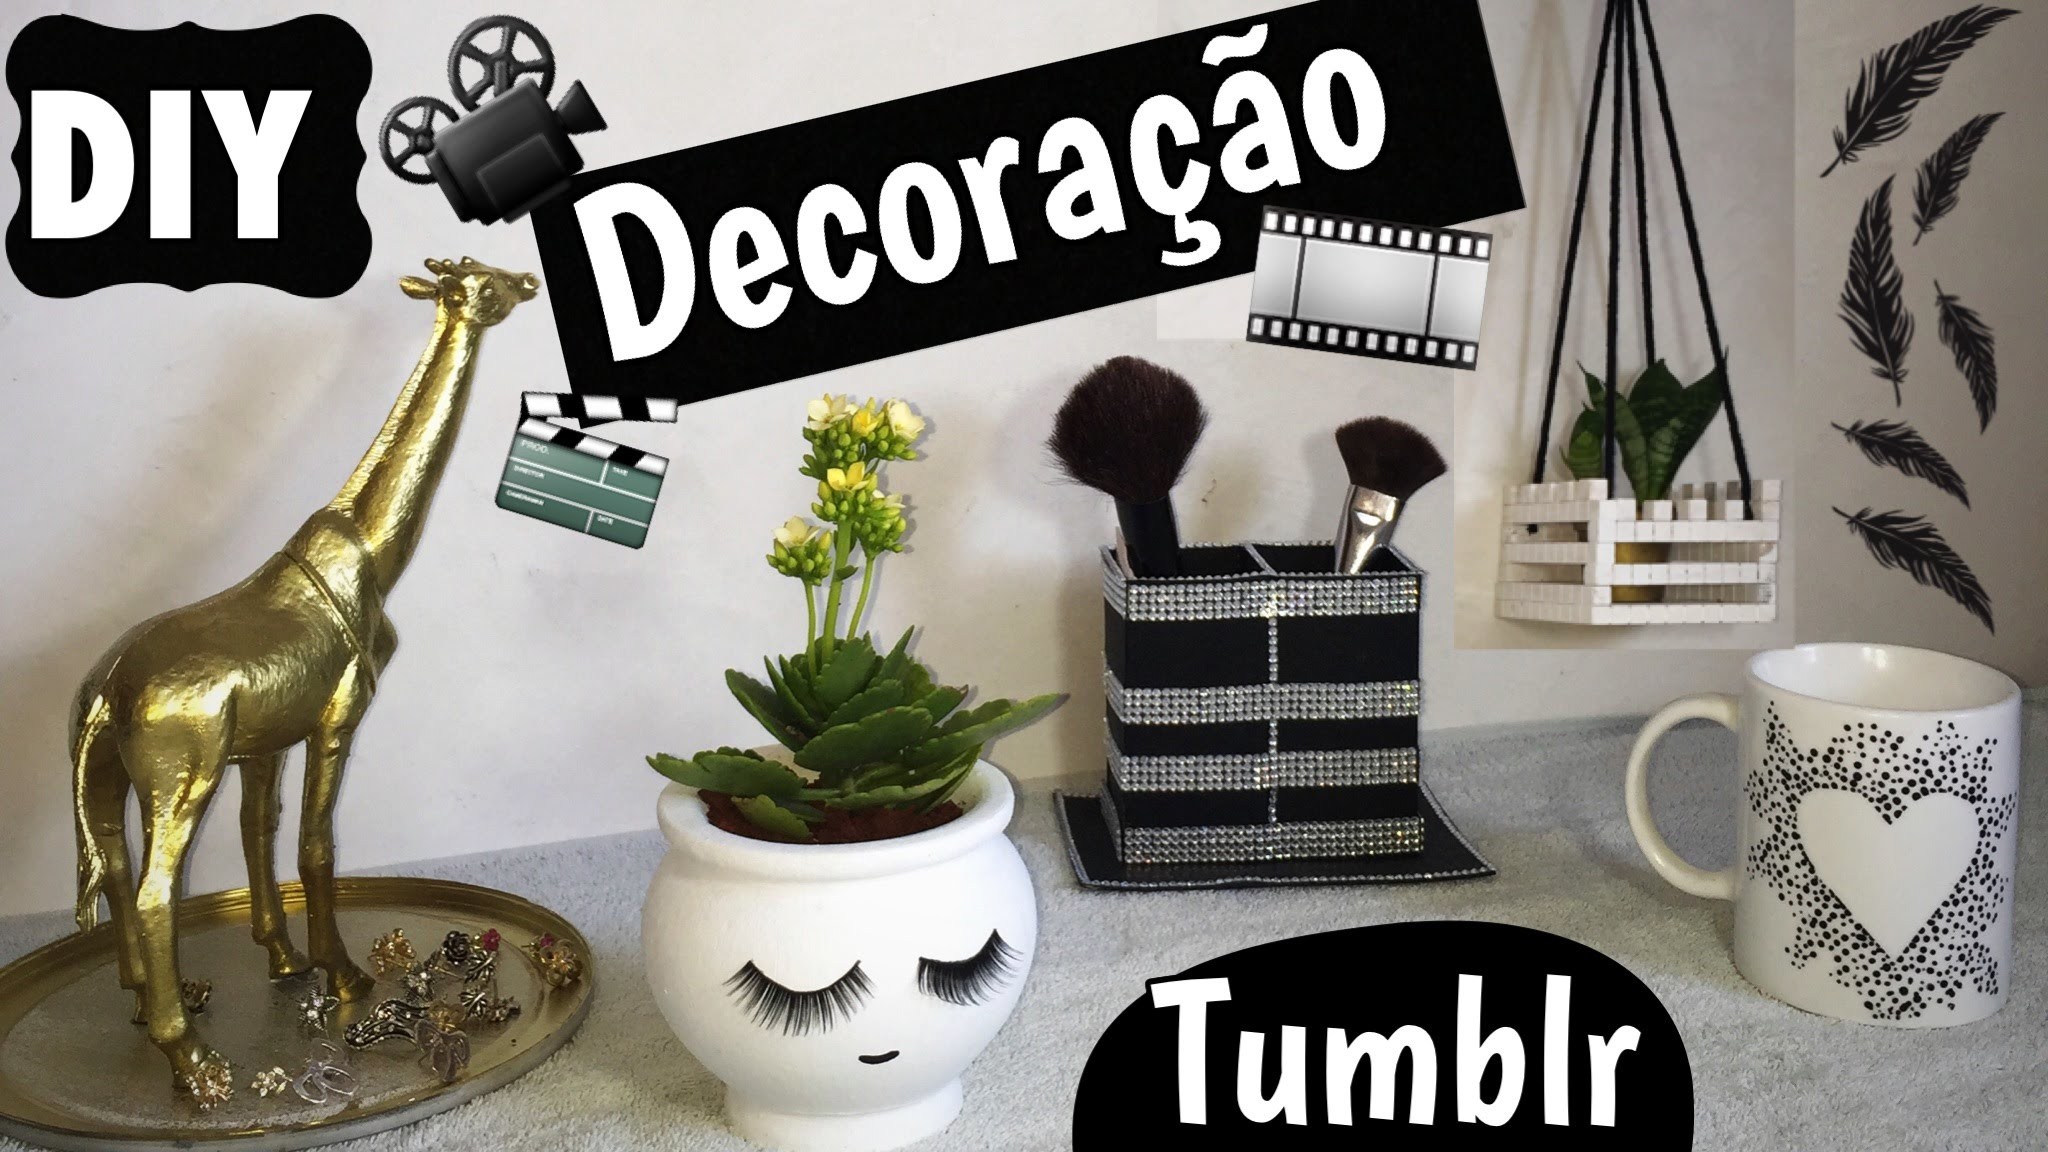 DIY - Decoração Tumblr Para Meninas - Eduardo Wizard